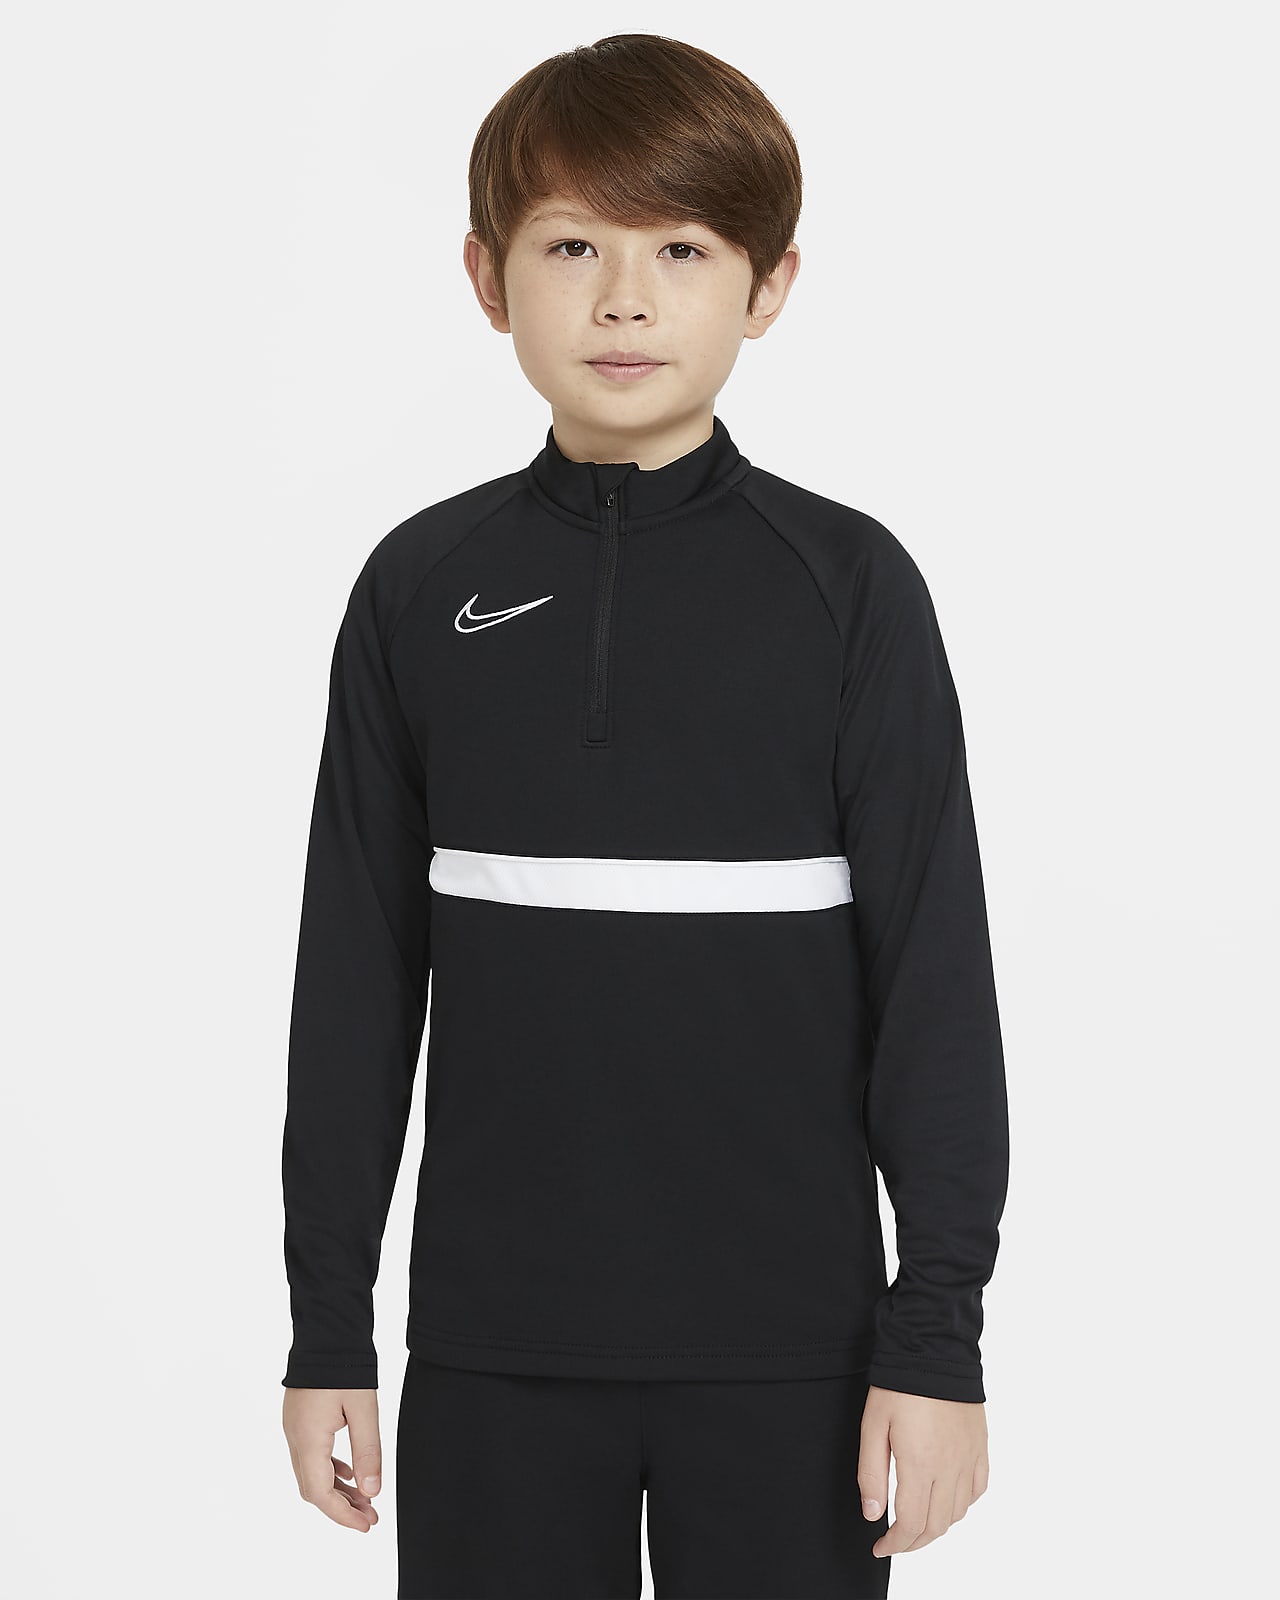 Ποδοσφαιρική μπλούζα προπόνησης Nike Dri-FIT Academy για μεγάλα παιδιά